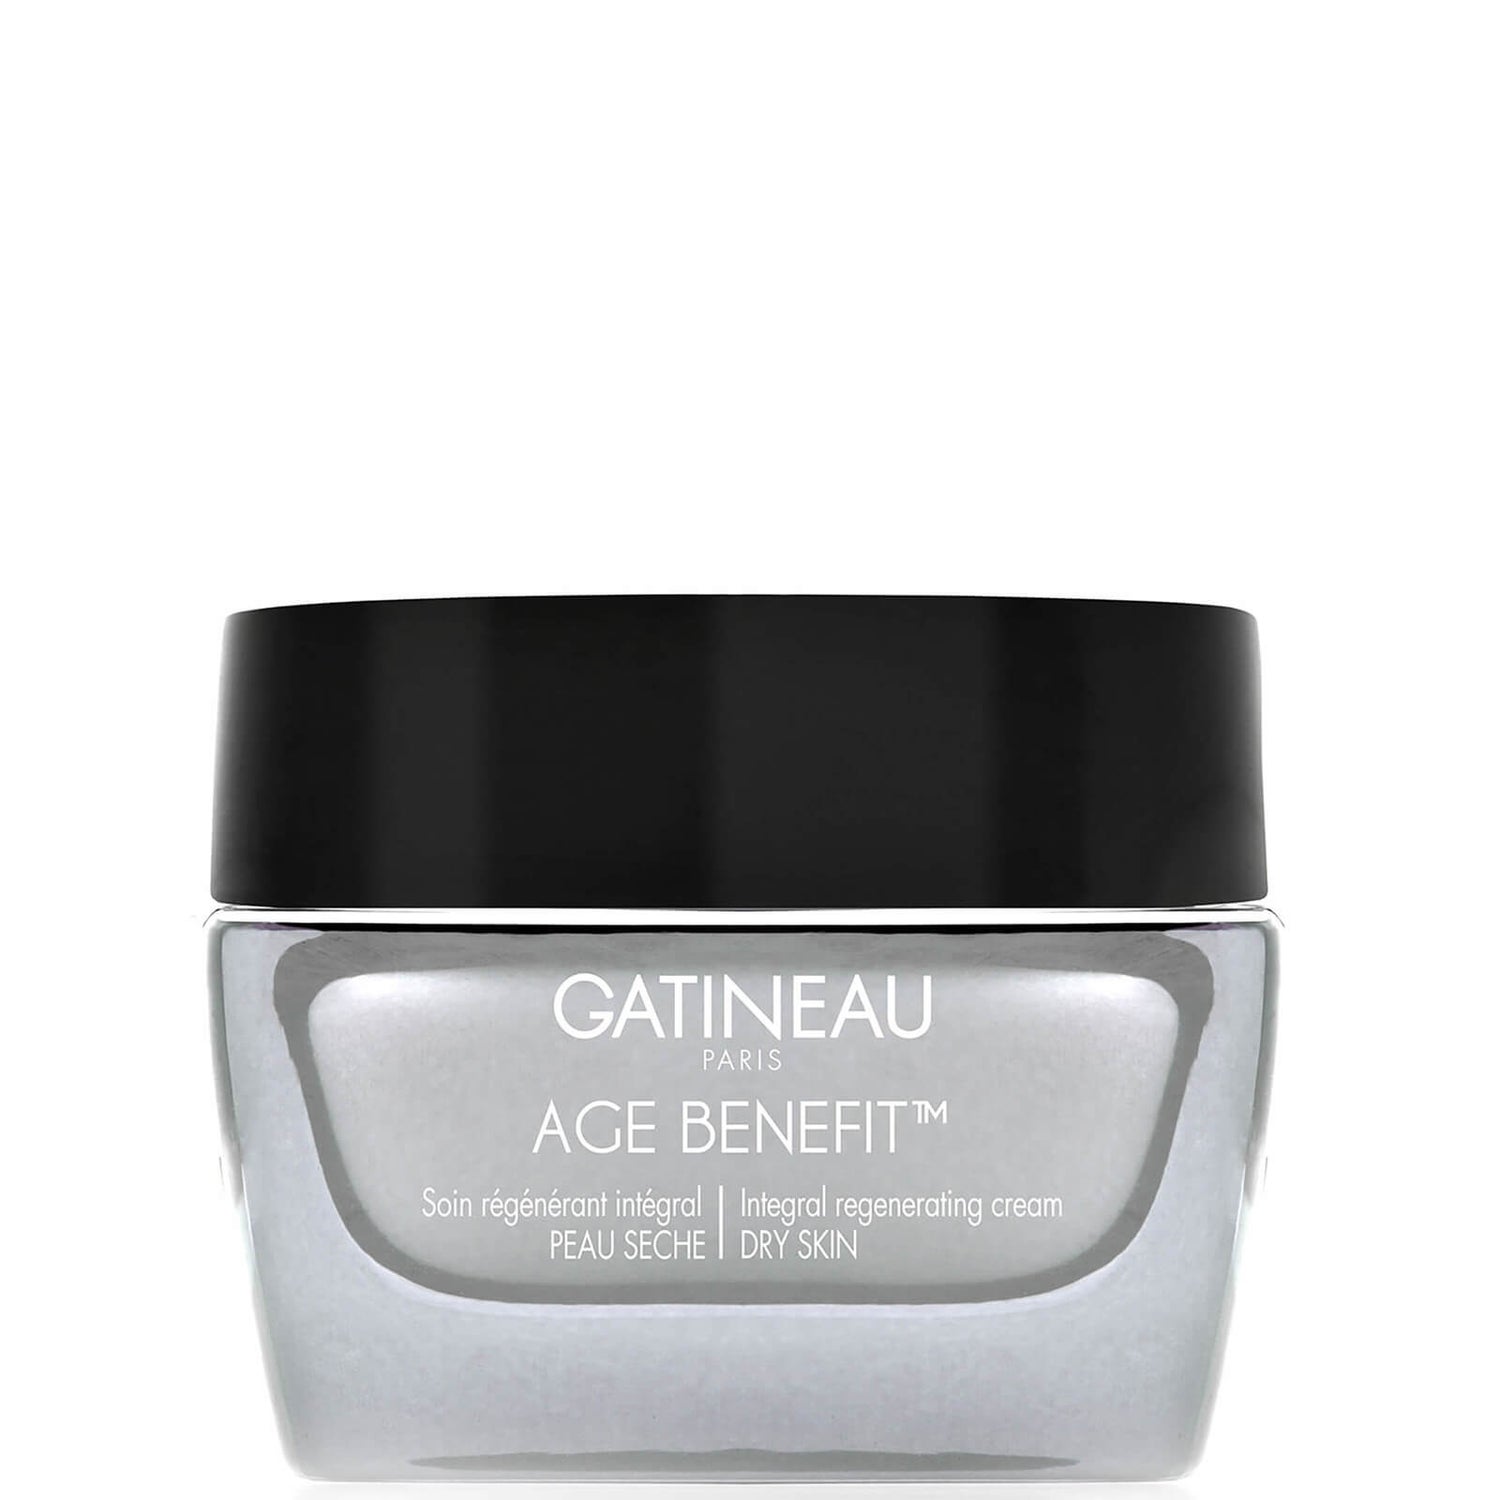 Gatineau Age Benefit Integral Regenerating Cream - Dry Skin krem regenerujący do suchej skóry (50 ml)